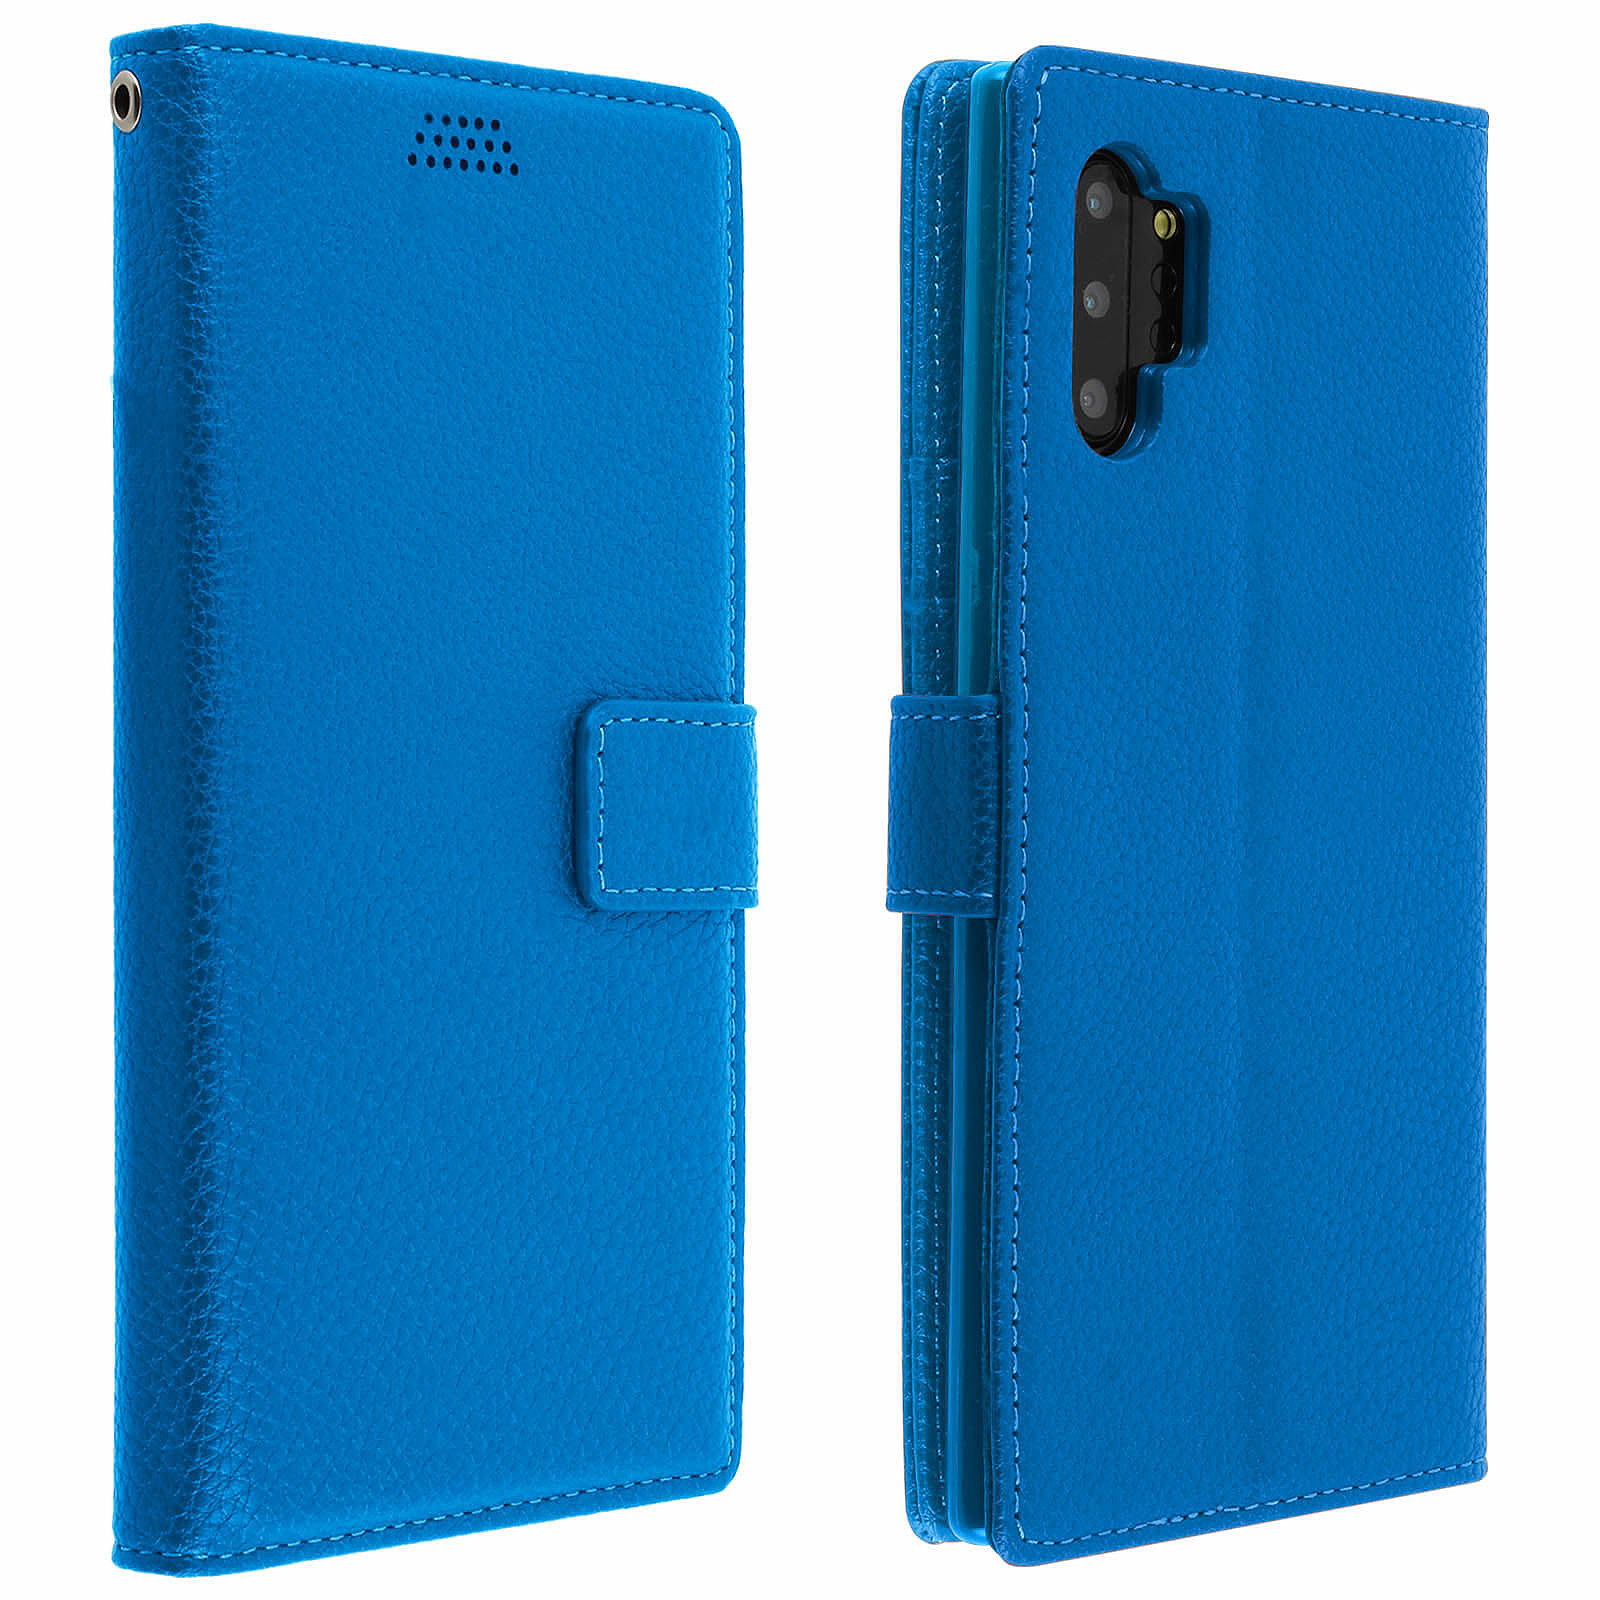 Avizar Etui folio Bleu aco-cuir pour Samsung Galaxy Note 10 - Coque telephone Avizar